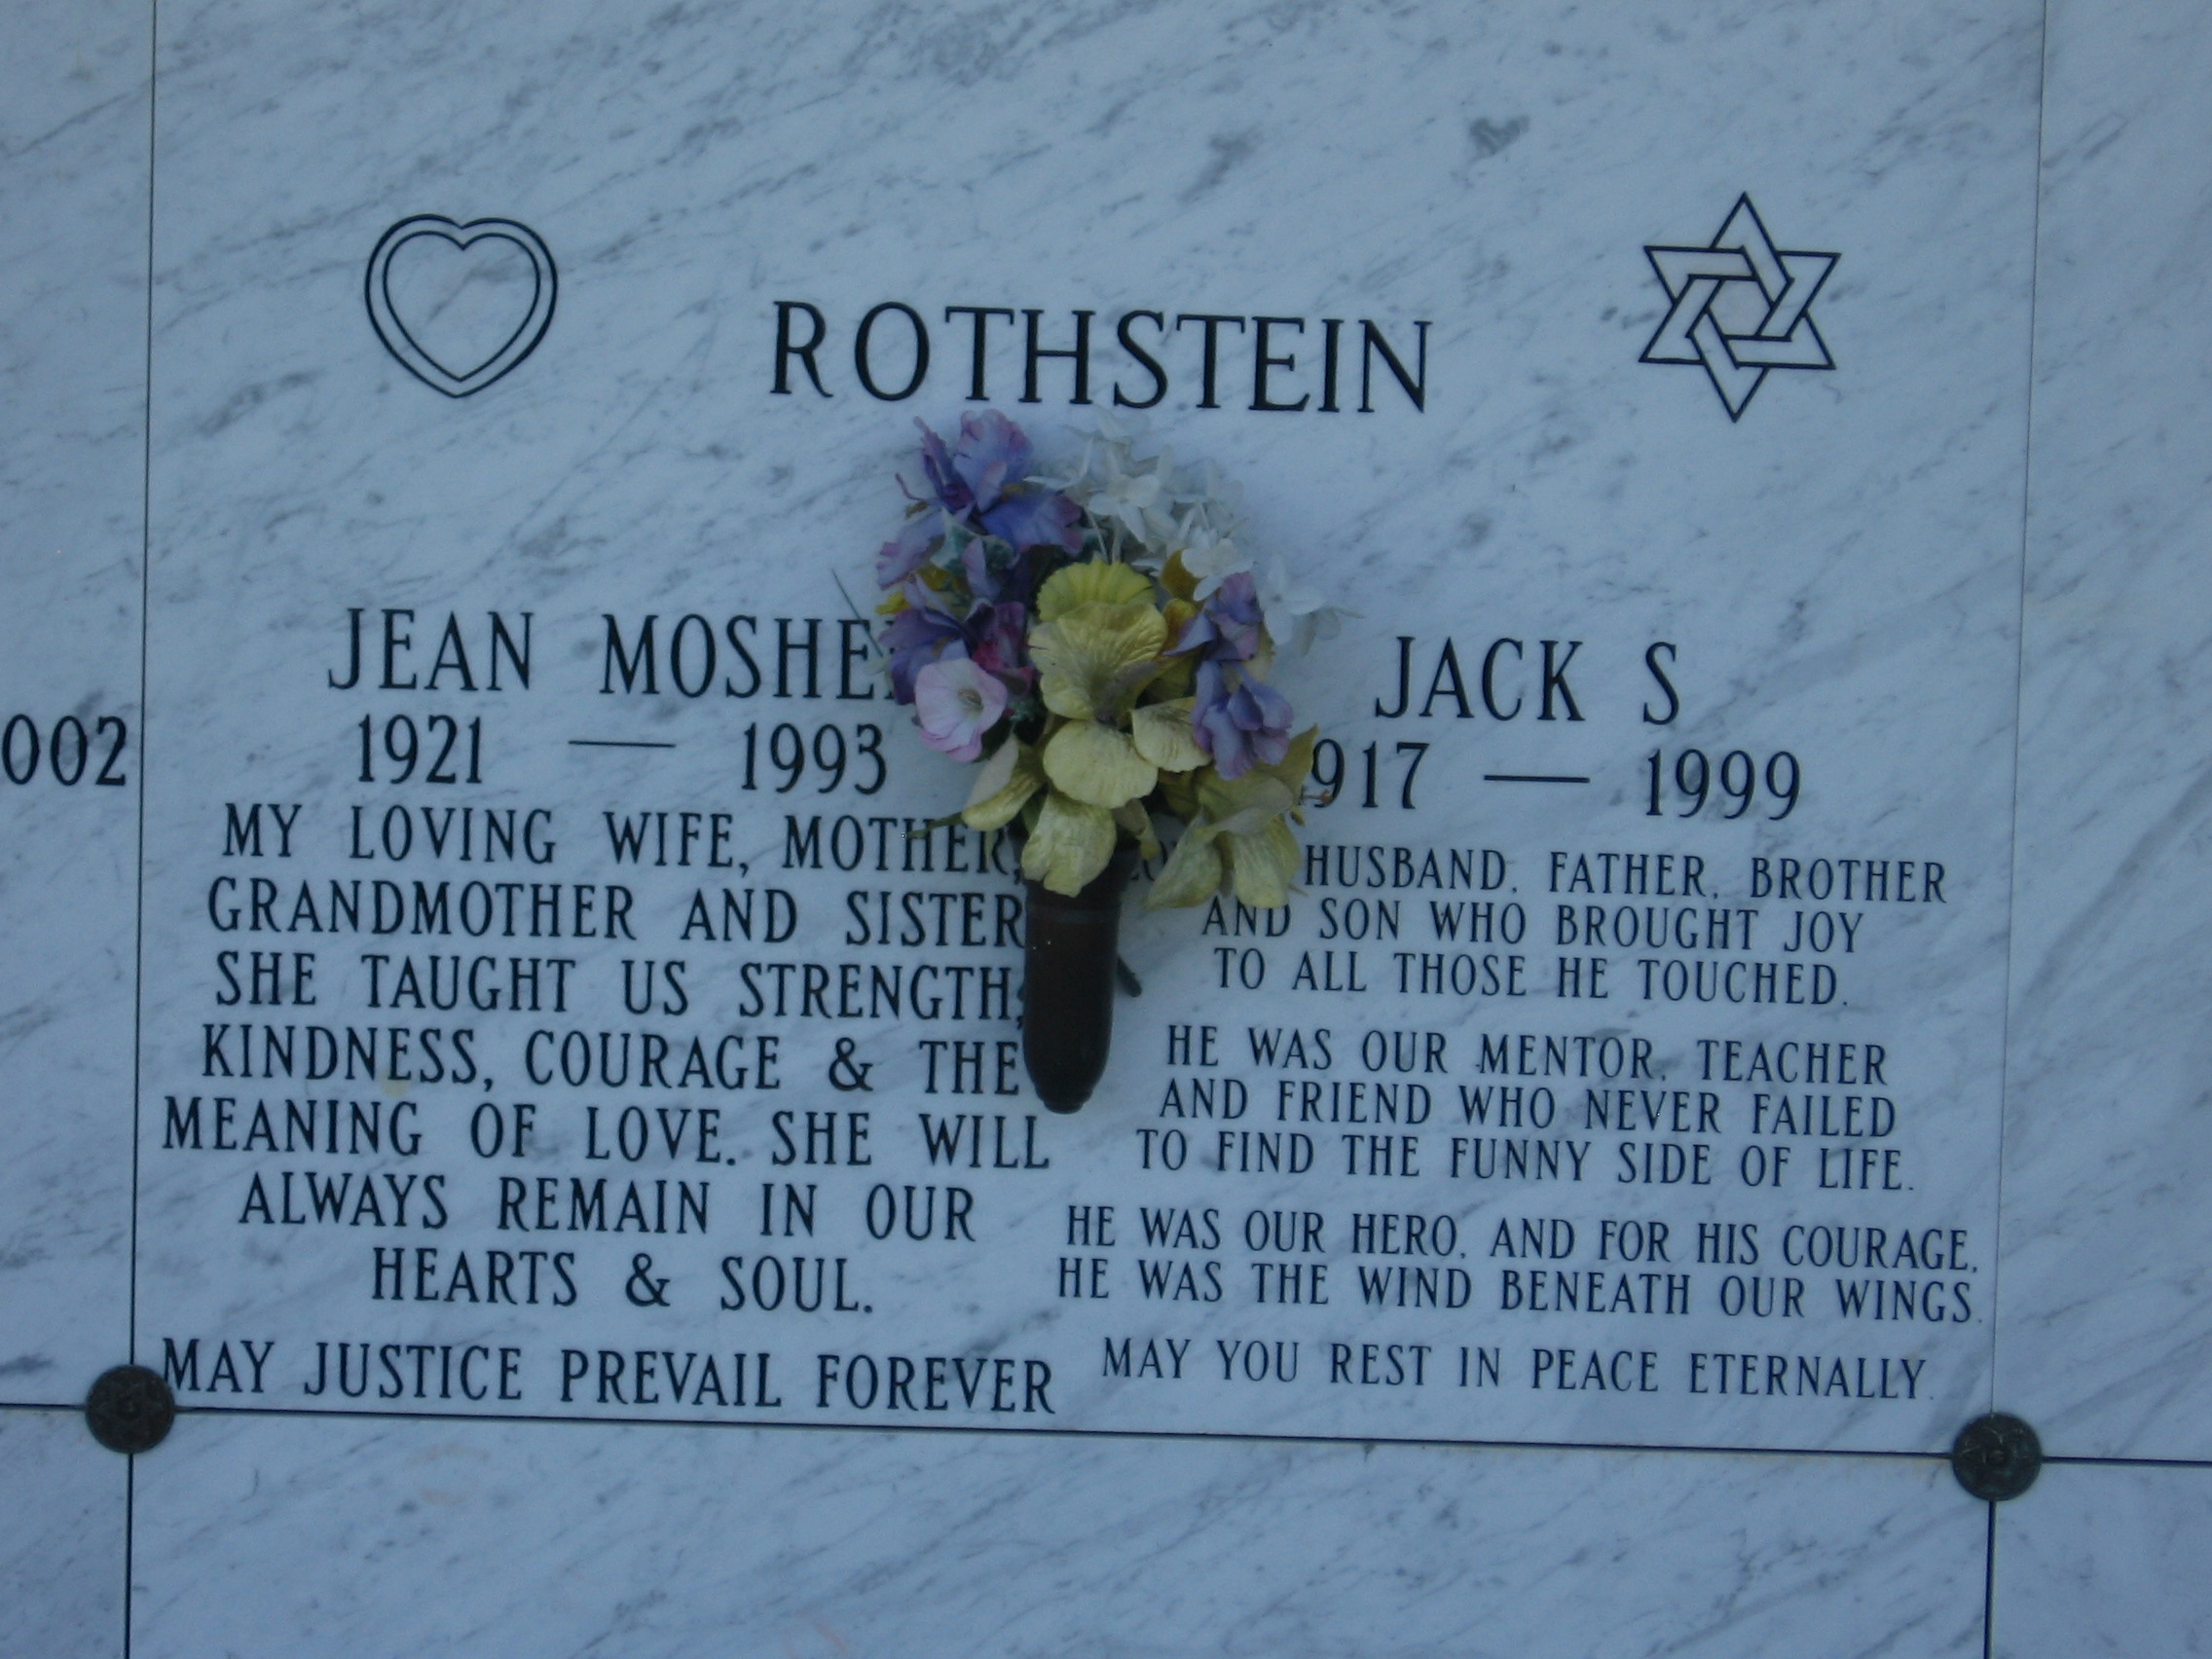 Jean Moshe Rothstein